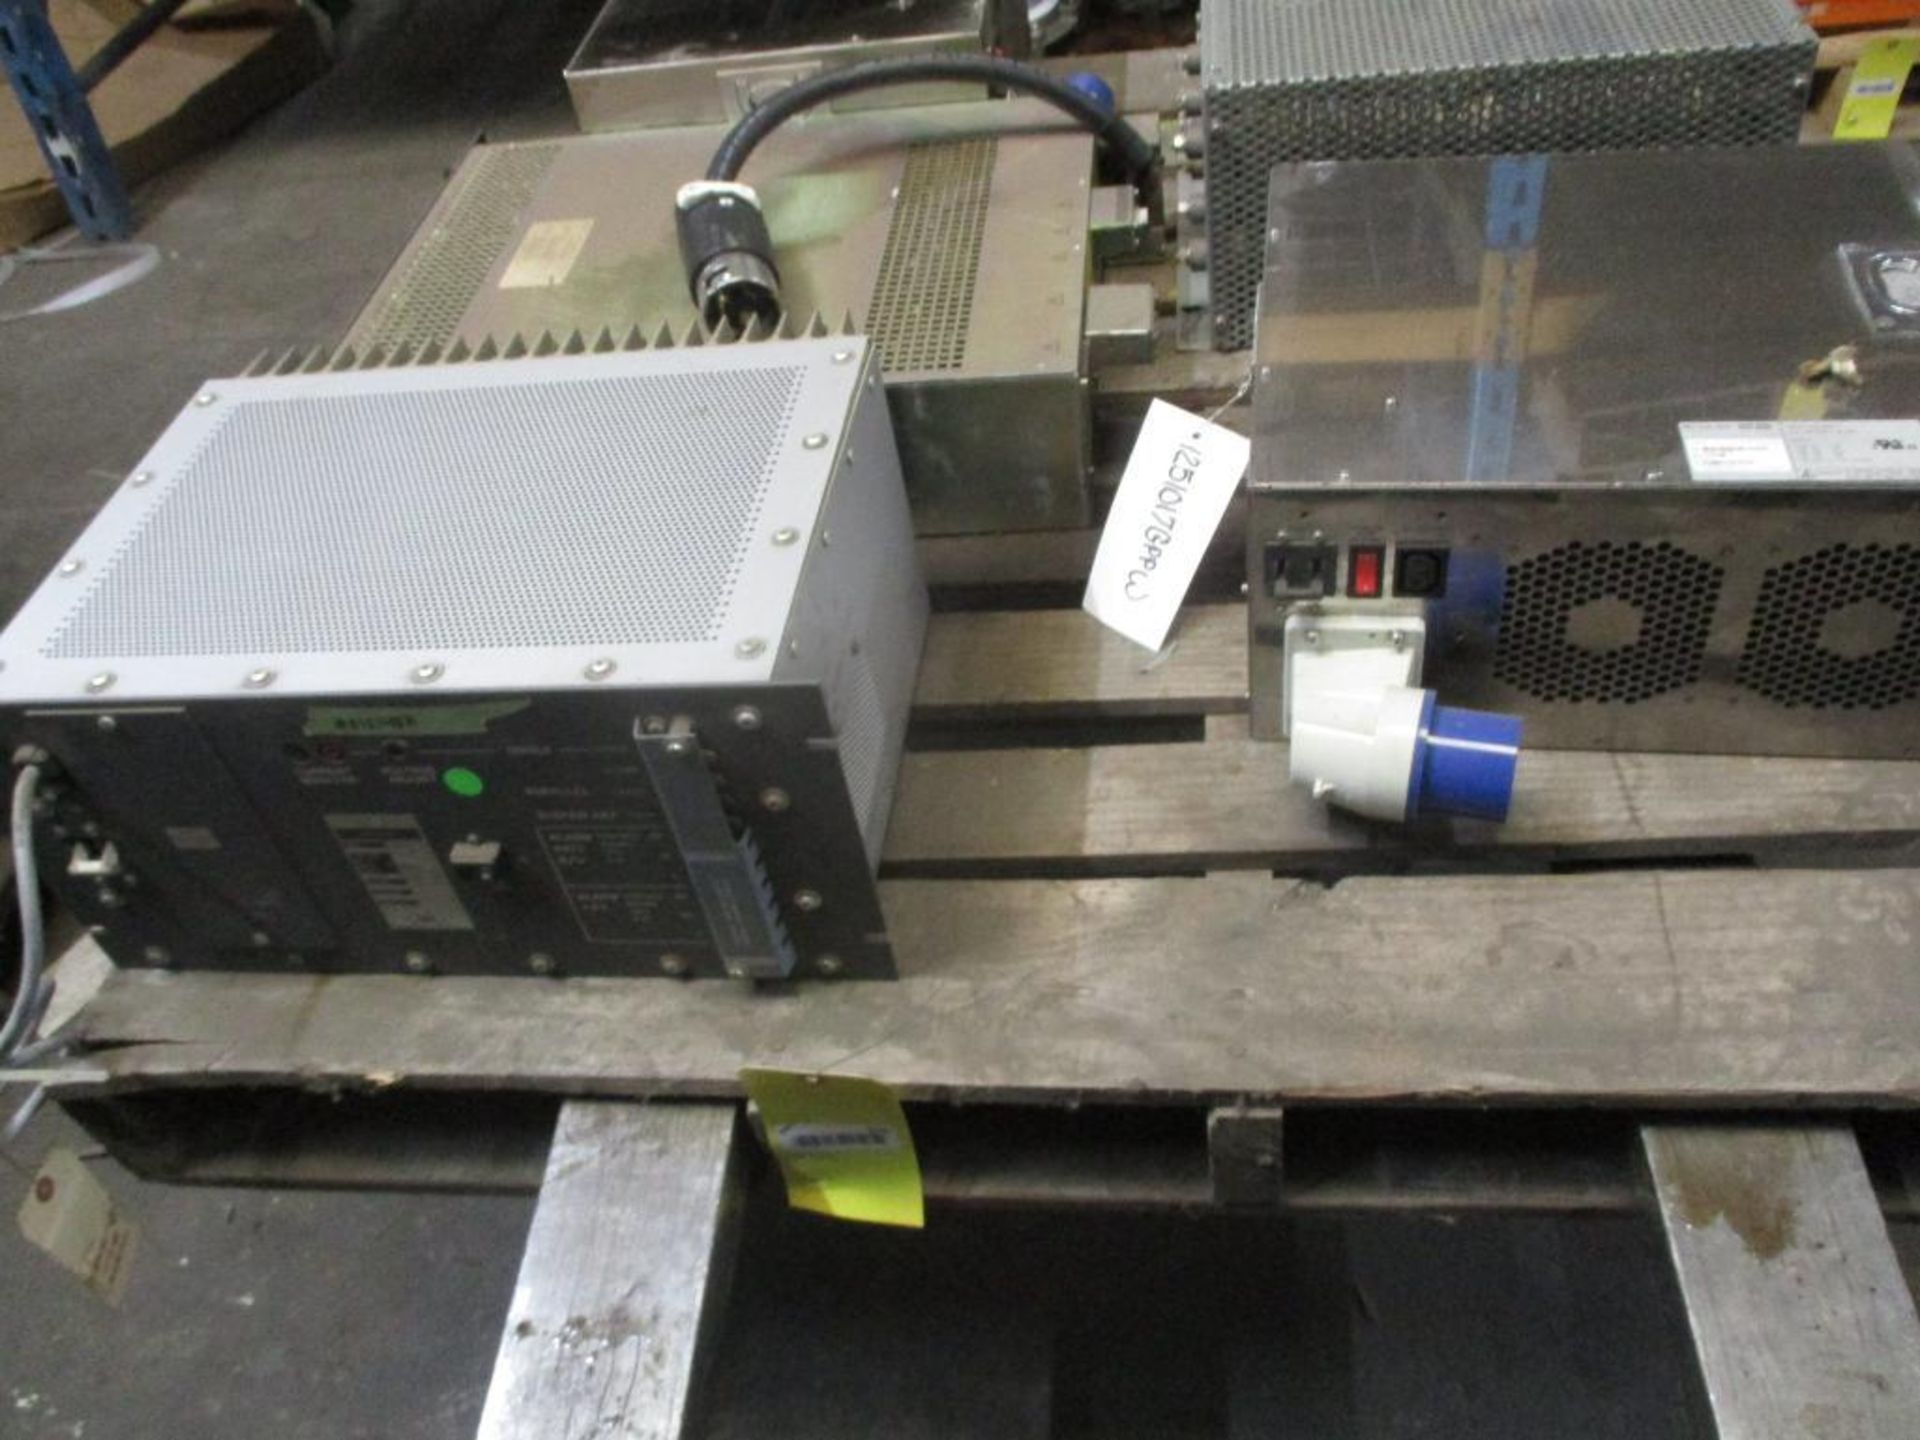 (5) Pcs. Electrical; Foxboro Spec 200, Sorensen DHP Controller, (2) Nao-Tech Power Supplies & More - Image 2 of 4